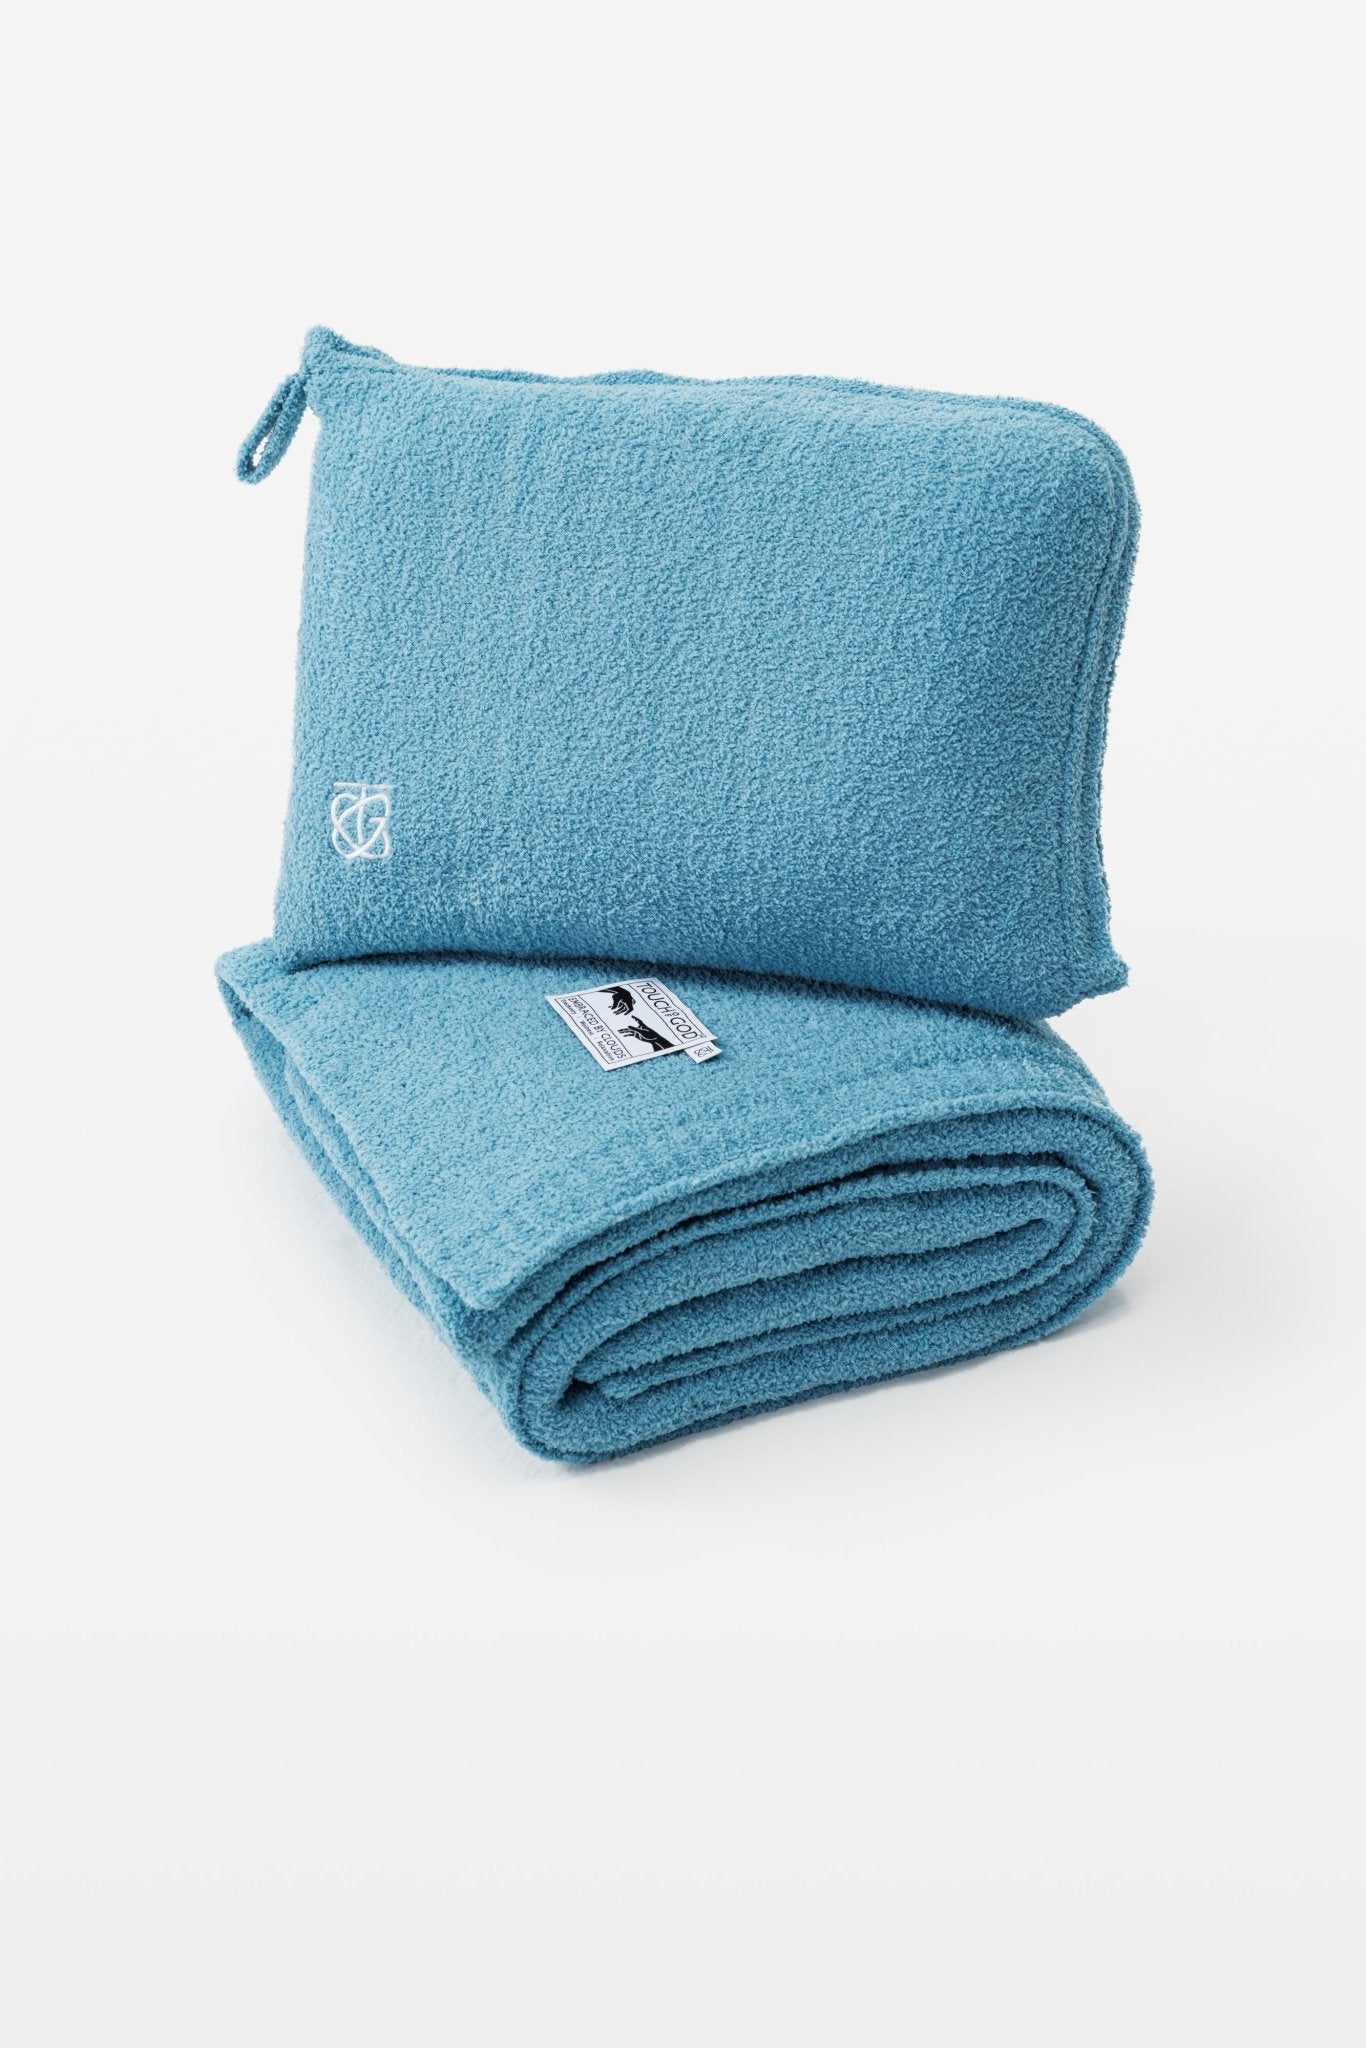 Aqua Blue Smart Traveller | Luxury Plush Travel Pillow Throw Blanket - Throw - Touchofgod.co